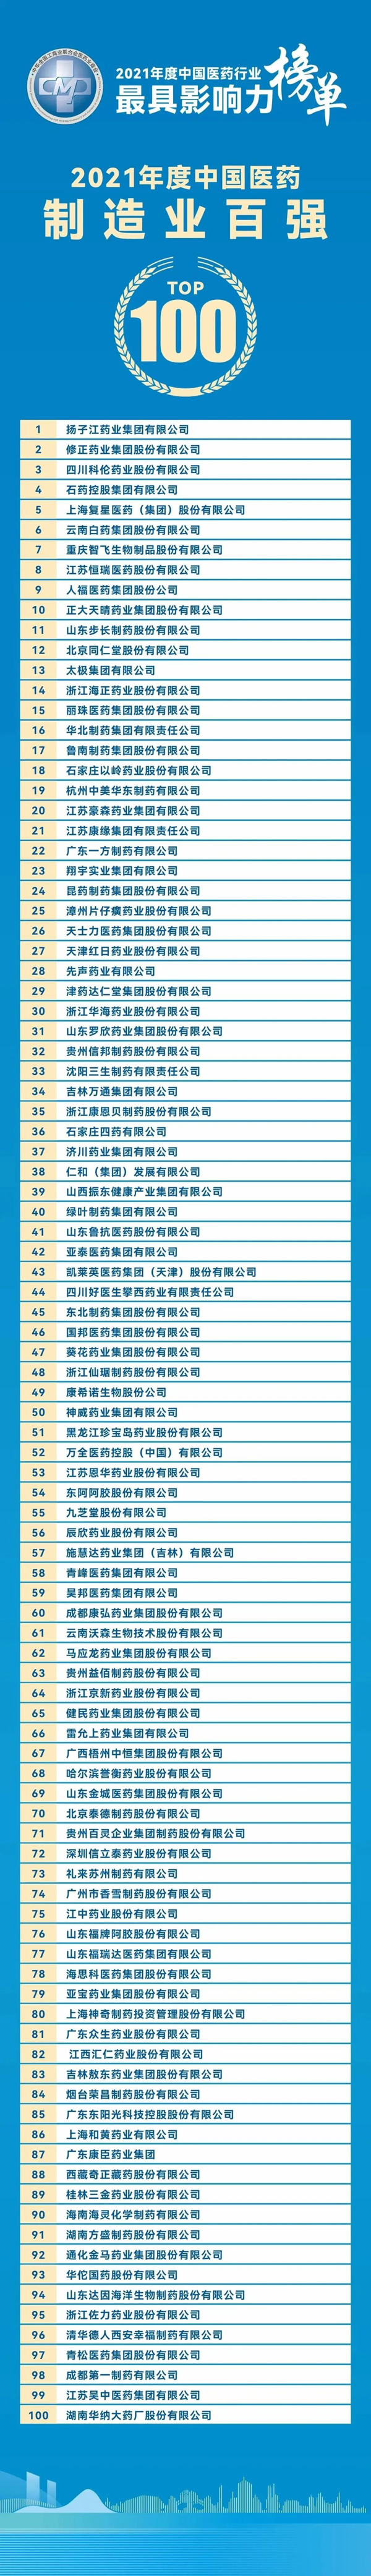 扬子江药业集团登顶“2021年度中国医药制造业百强”榜单